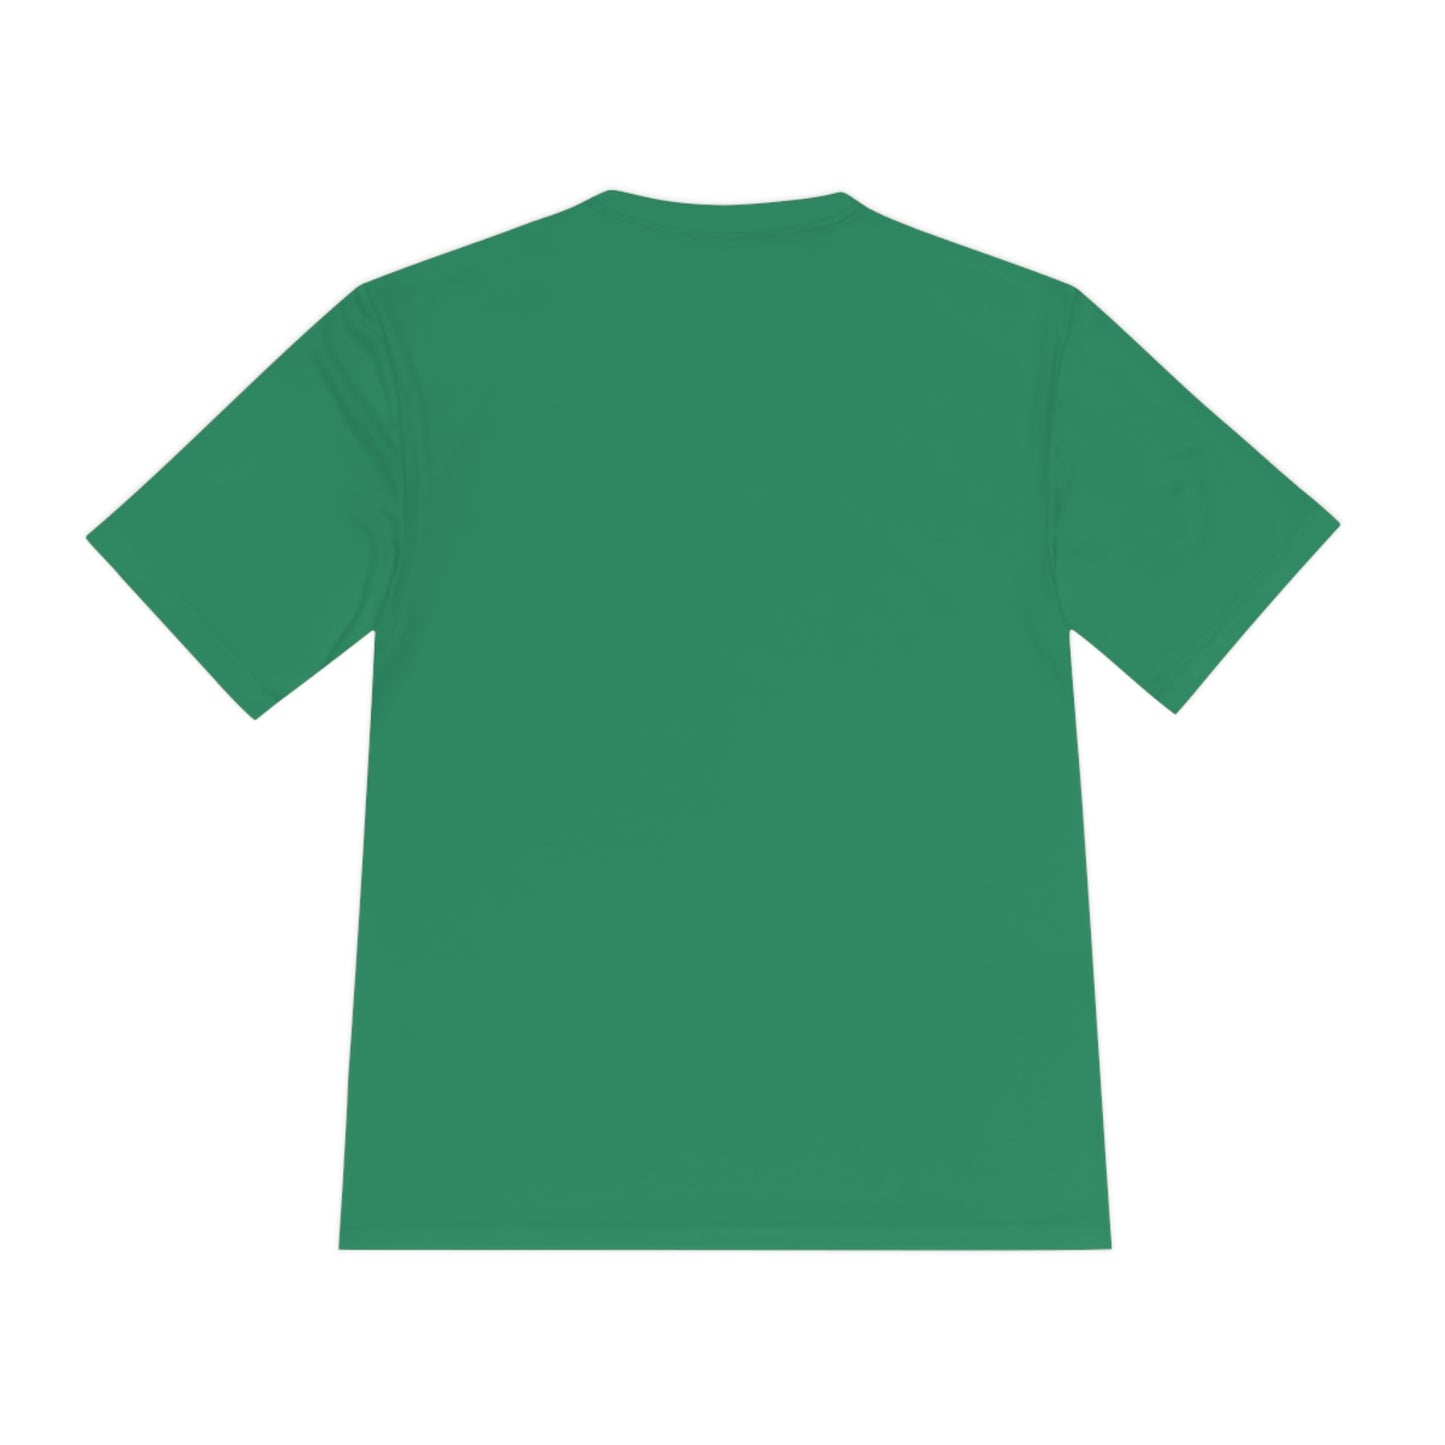 Athletic House Shirt [Adult Sizes]